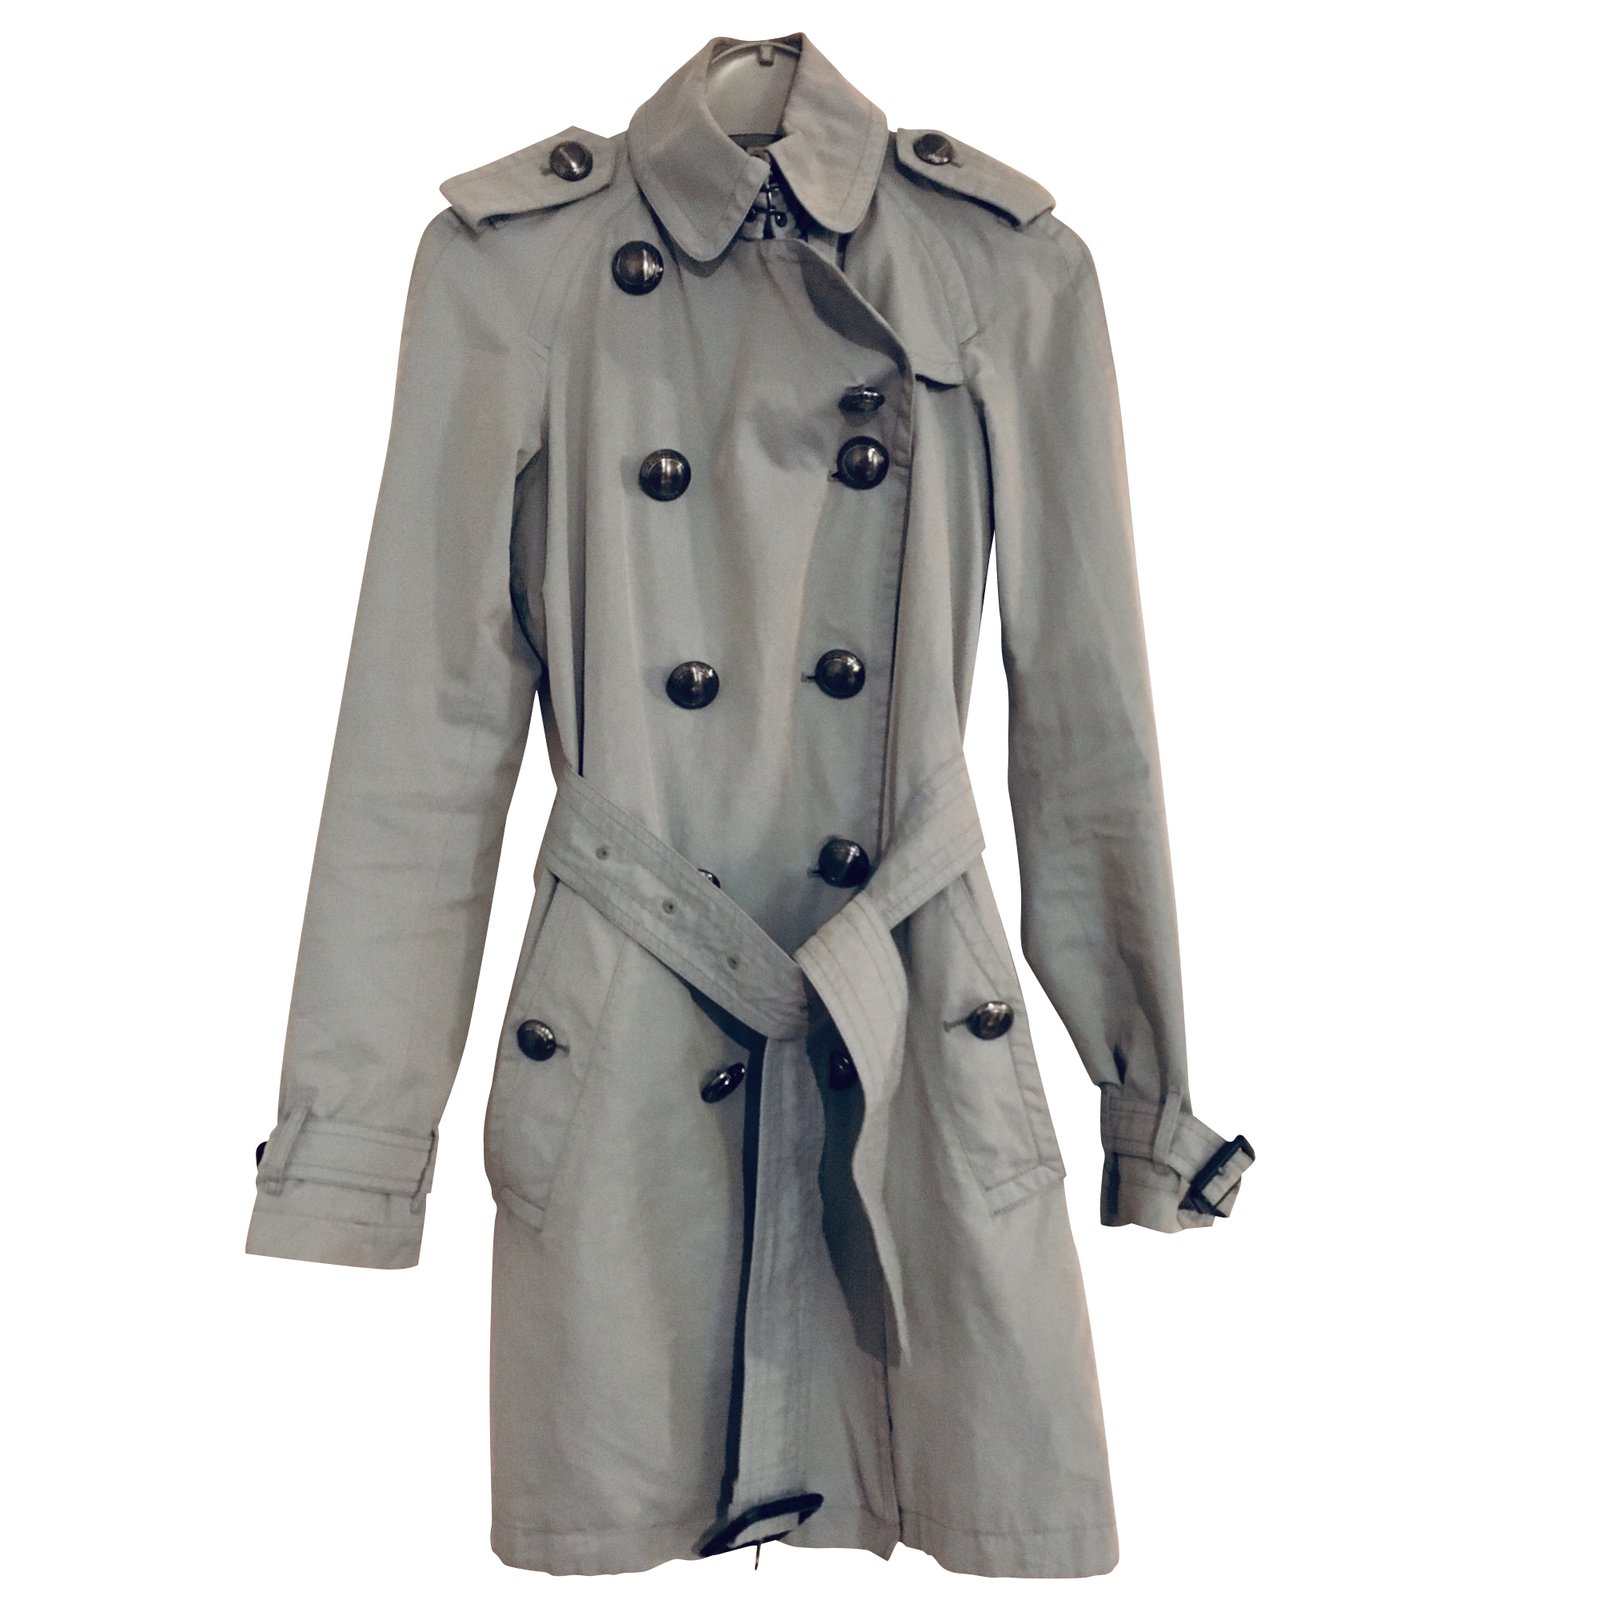 burberry prorsum trench coat